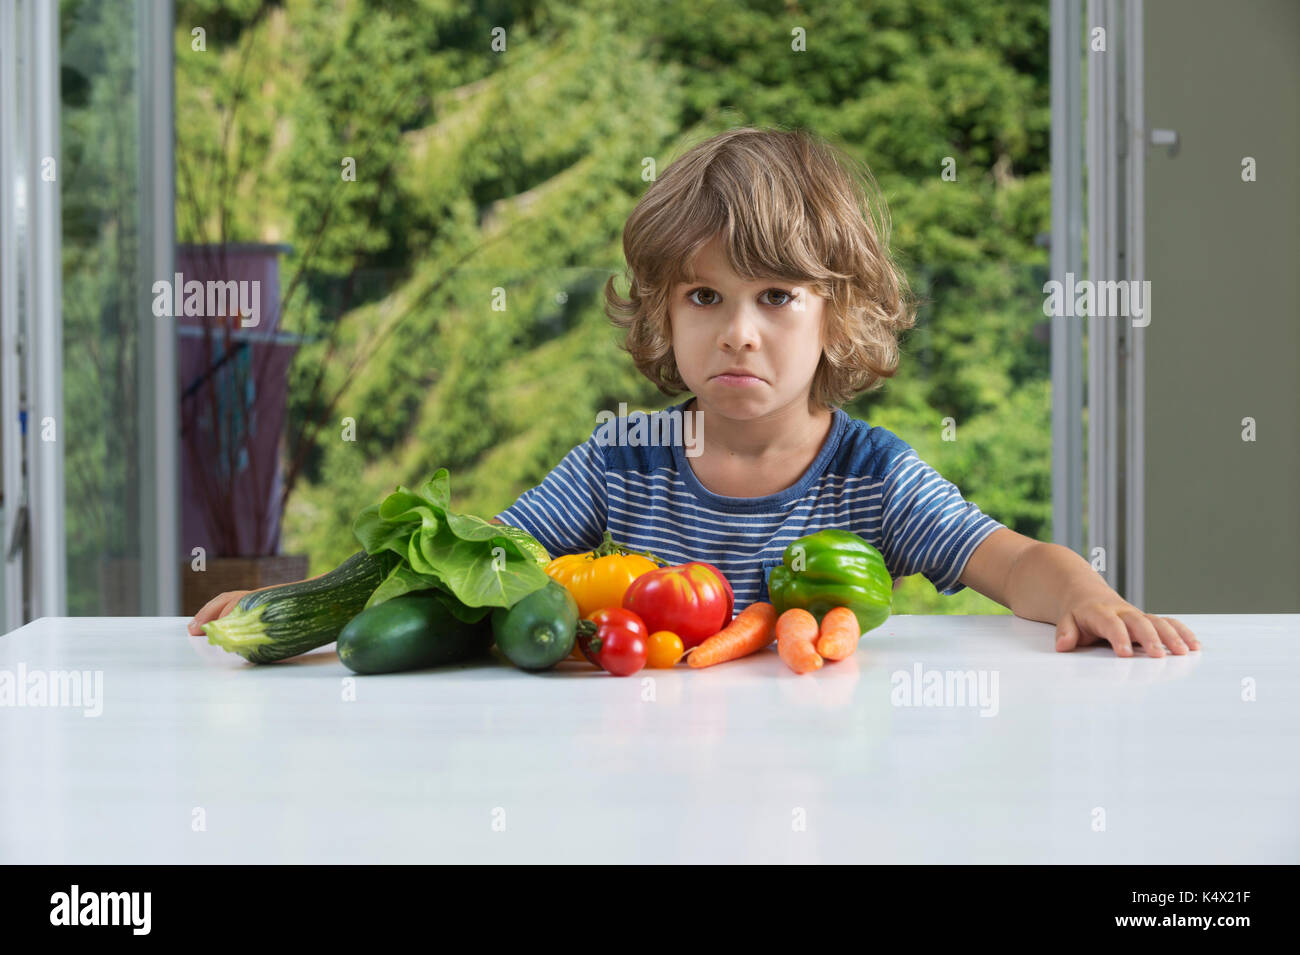 Cute little boy am Tisch sitzen, unglücklich mit seinem Gemüse essen, schlechte Essgewohnheiten, Ernährung und gesunde Ernährung Konzept Stockfoto